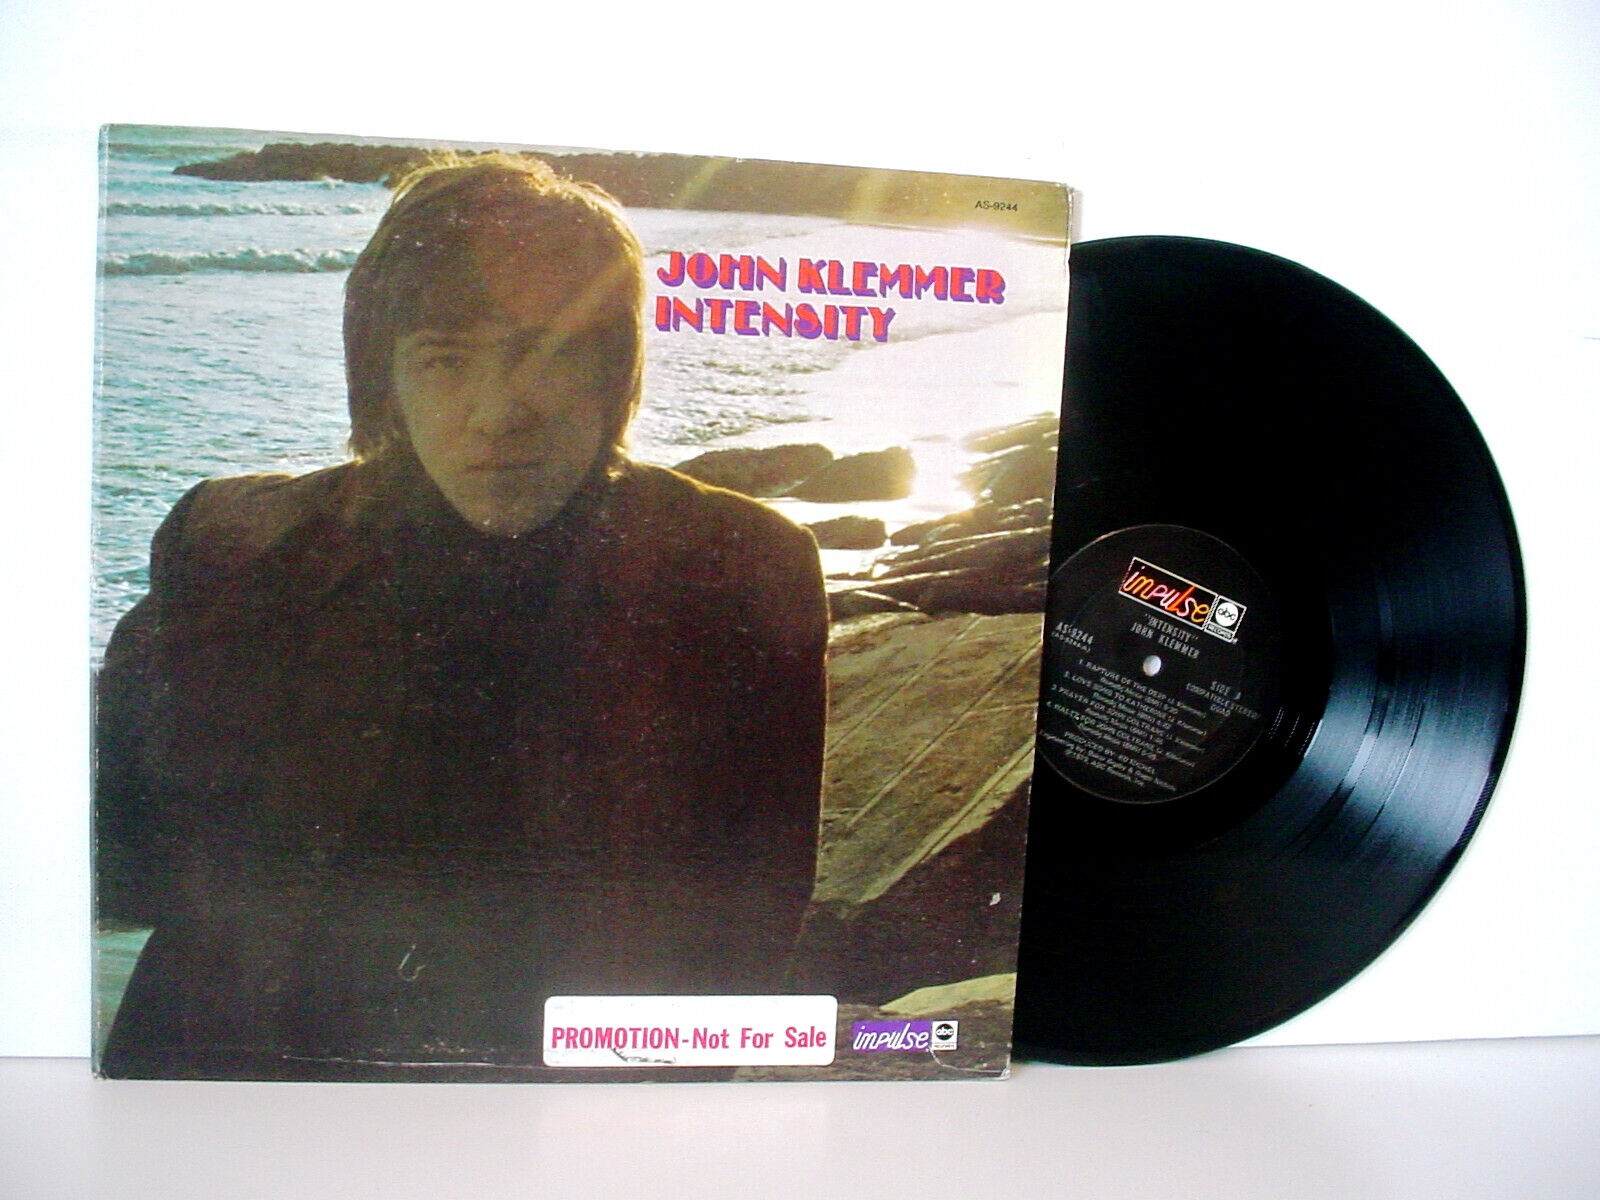 JOHN KLEMMER Intensity PROMO QUADRAPHONIC LP from 1973 (ABC/IMPULSE AS-9244)